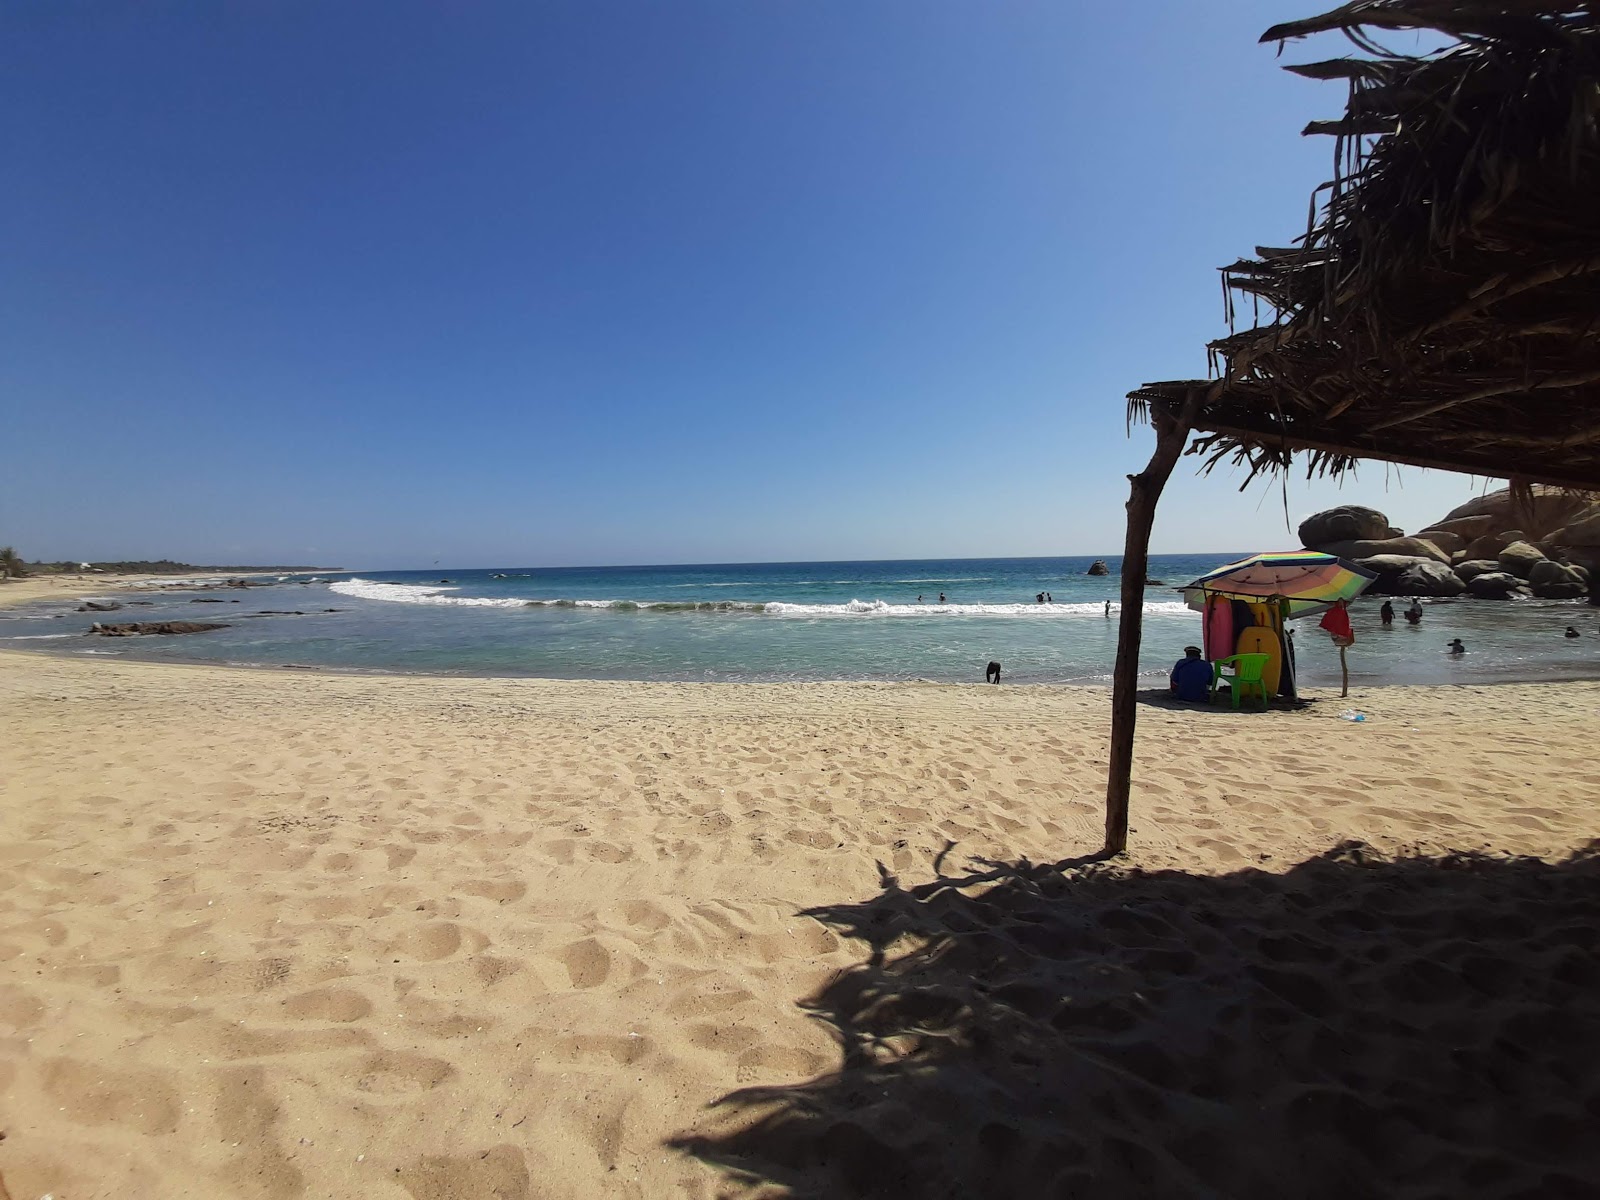 Playa Las Gaviotas'in fotoğrafı parlak kum yüzey ile